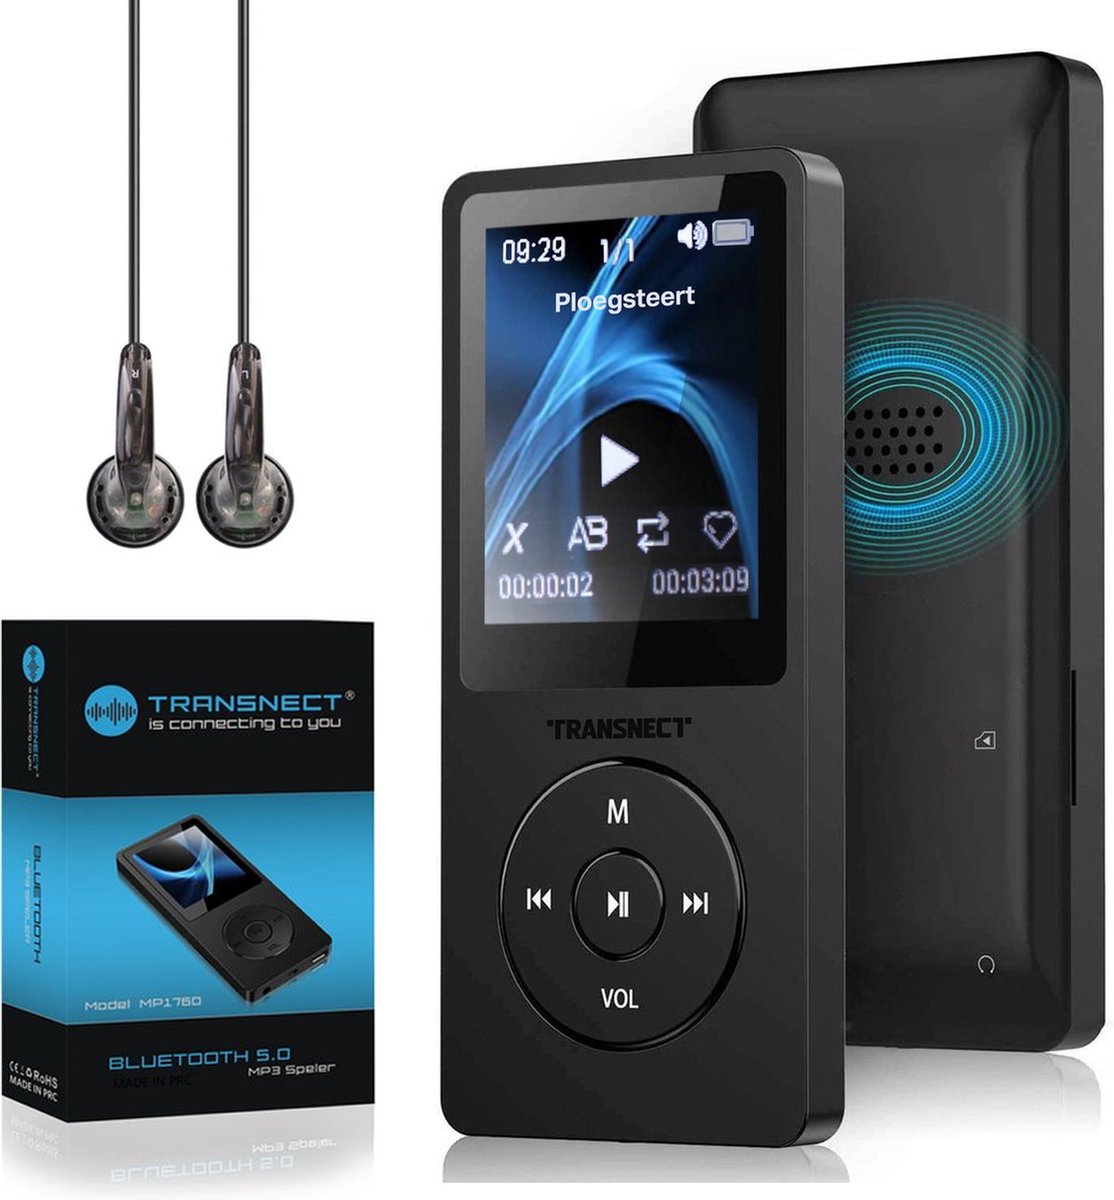 Retro Portable Radio Sans Fil Bluetooth Haut-Parleur Stéréo Am/FM Radio  Récepteur Lecteur USB Tf Aux Mp3 C